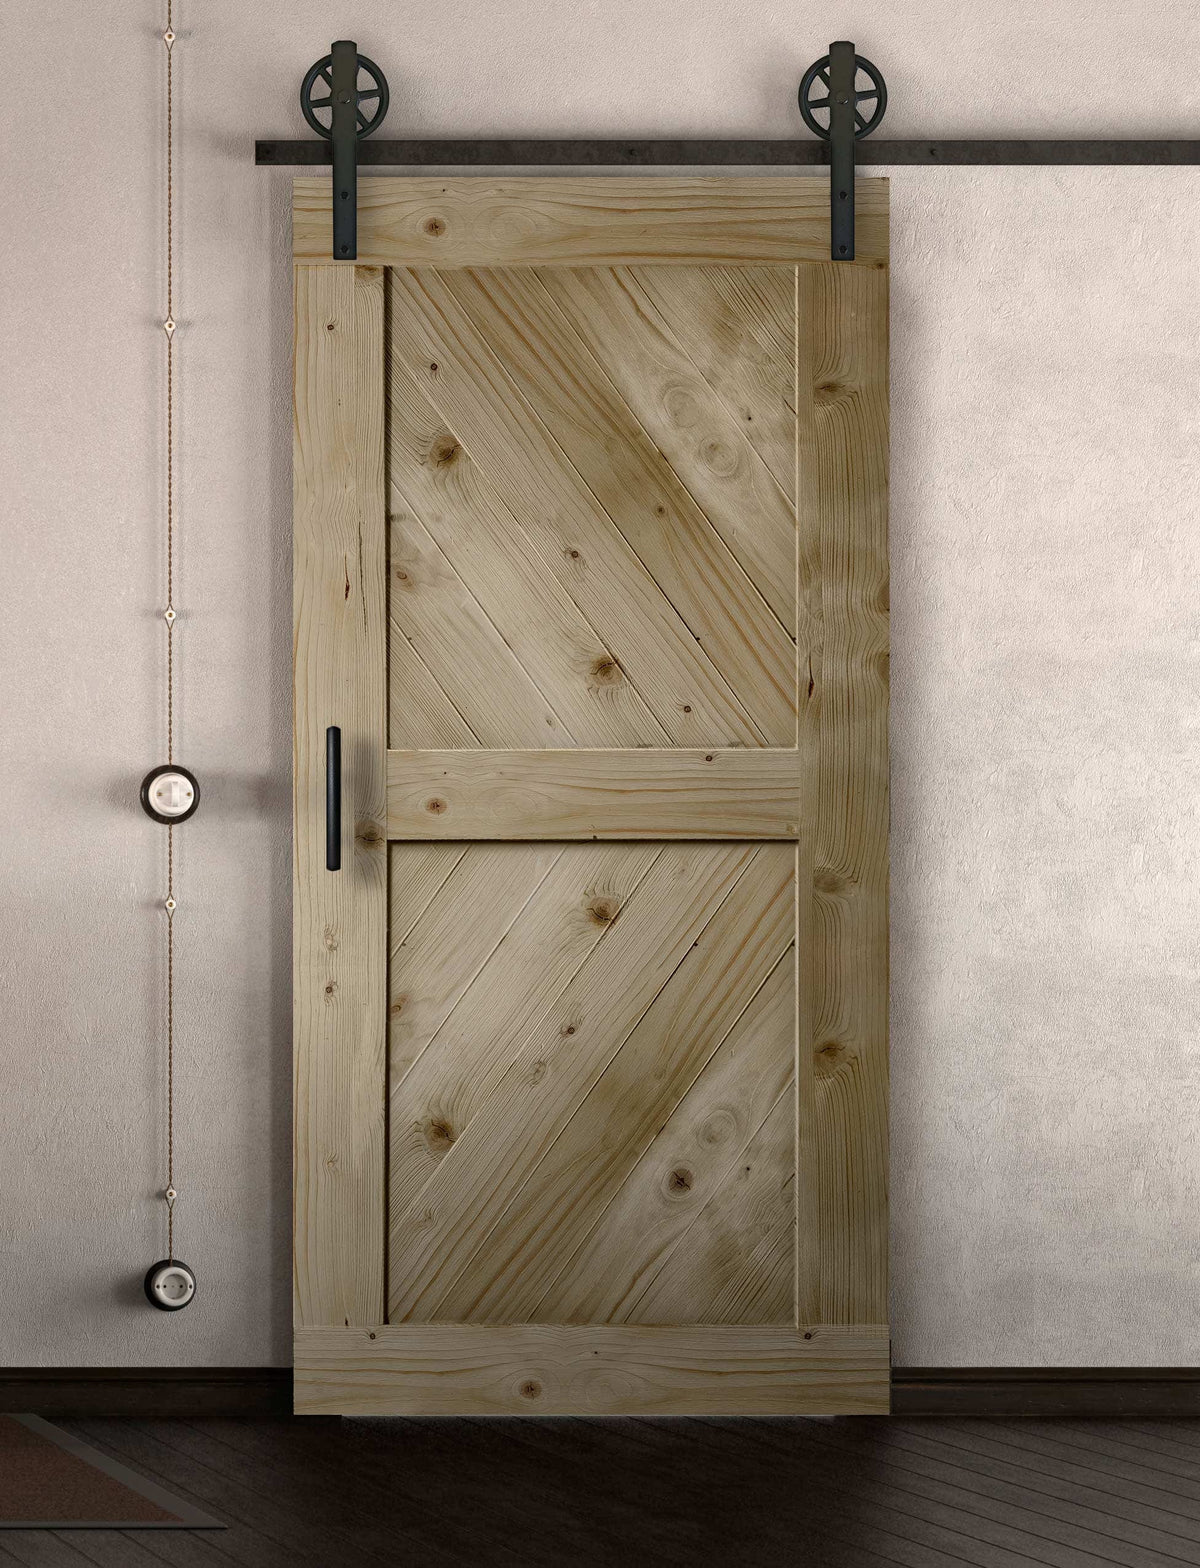 Schiebetür in Scheunentor Optik Modell Sloping - Farmhouse Barn Door rustikal nach rechts öffnend / Muster nur Vorderseite / natur lackiert